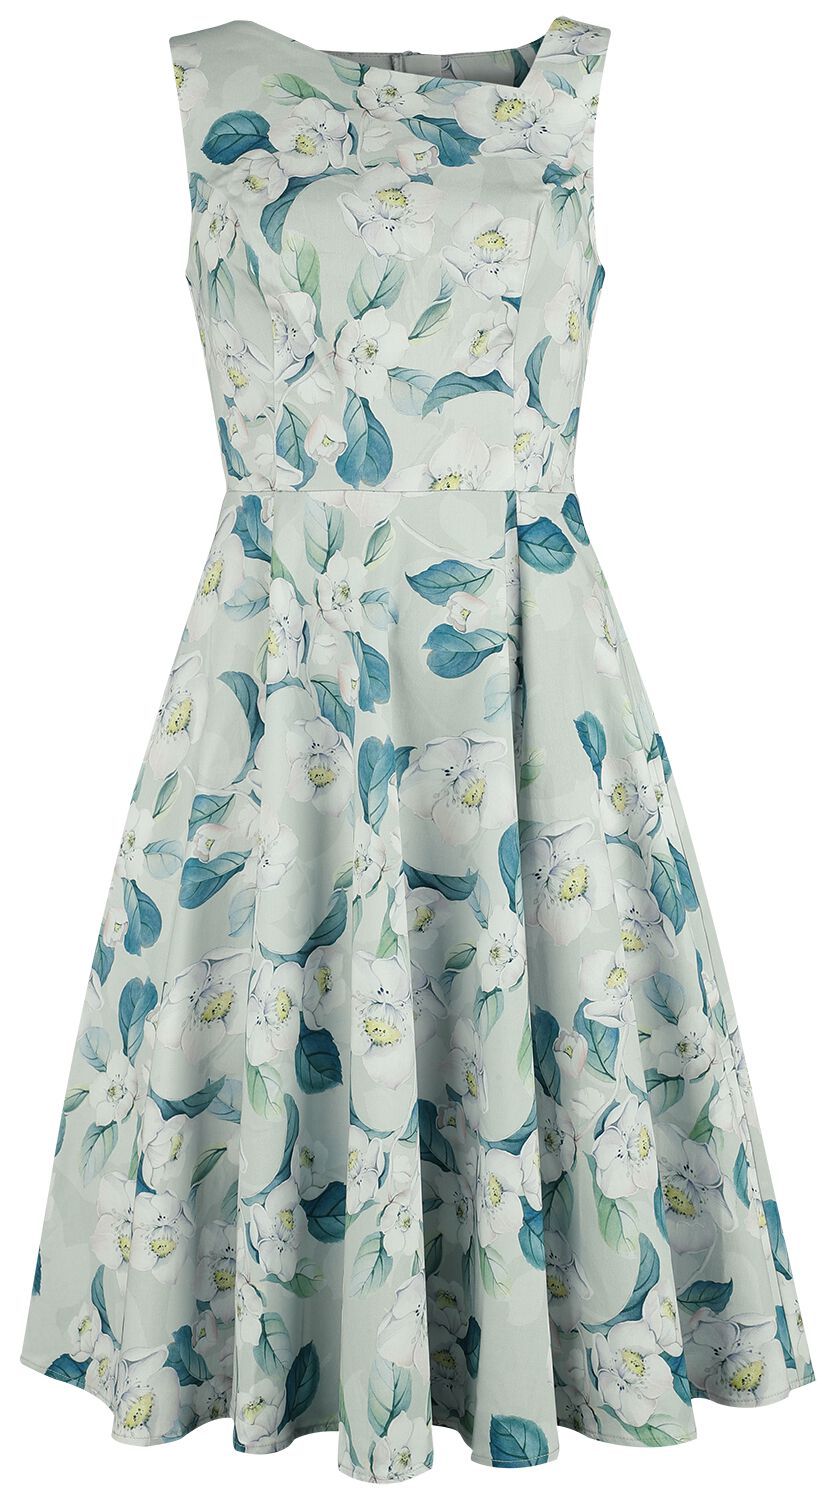 H&R London - Rockabilly Kleid knielang - Rey Floral Swing Dress - XS bis 4XL - für Damen - Größe 4XL - grün/weiß